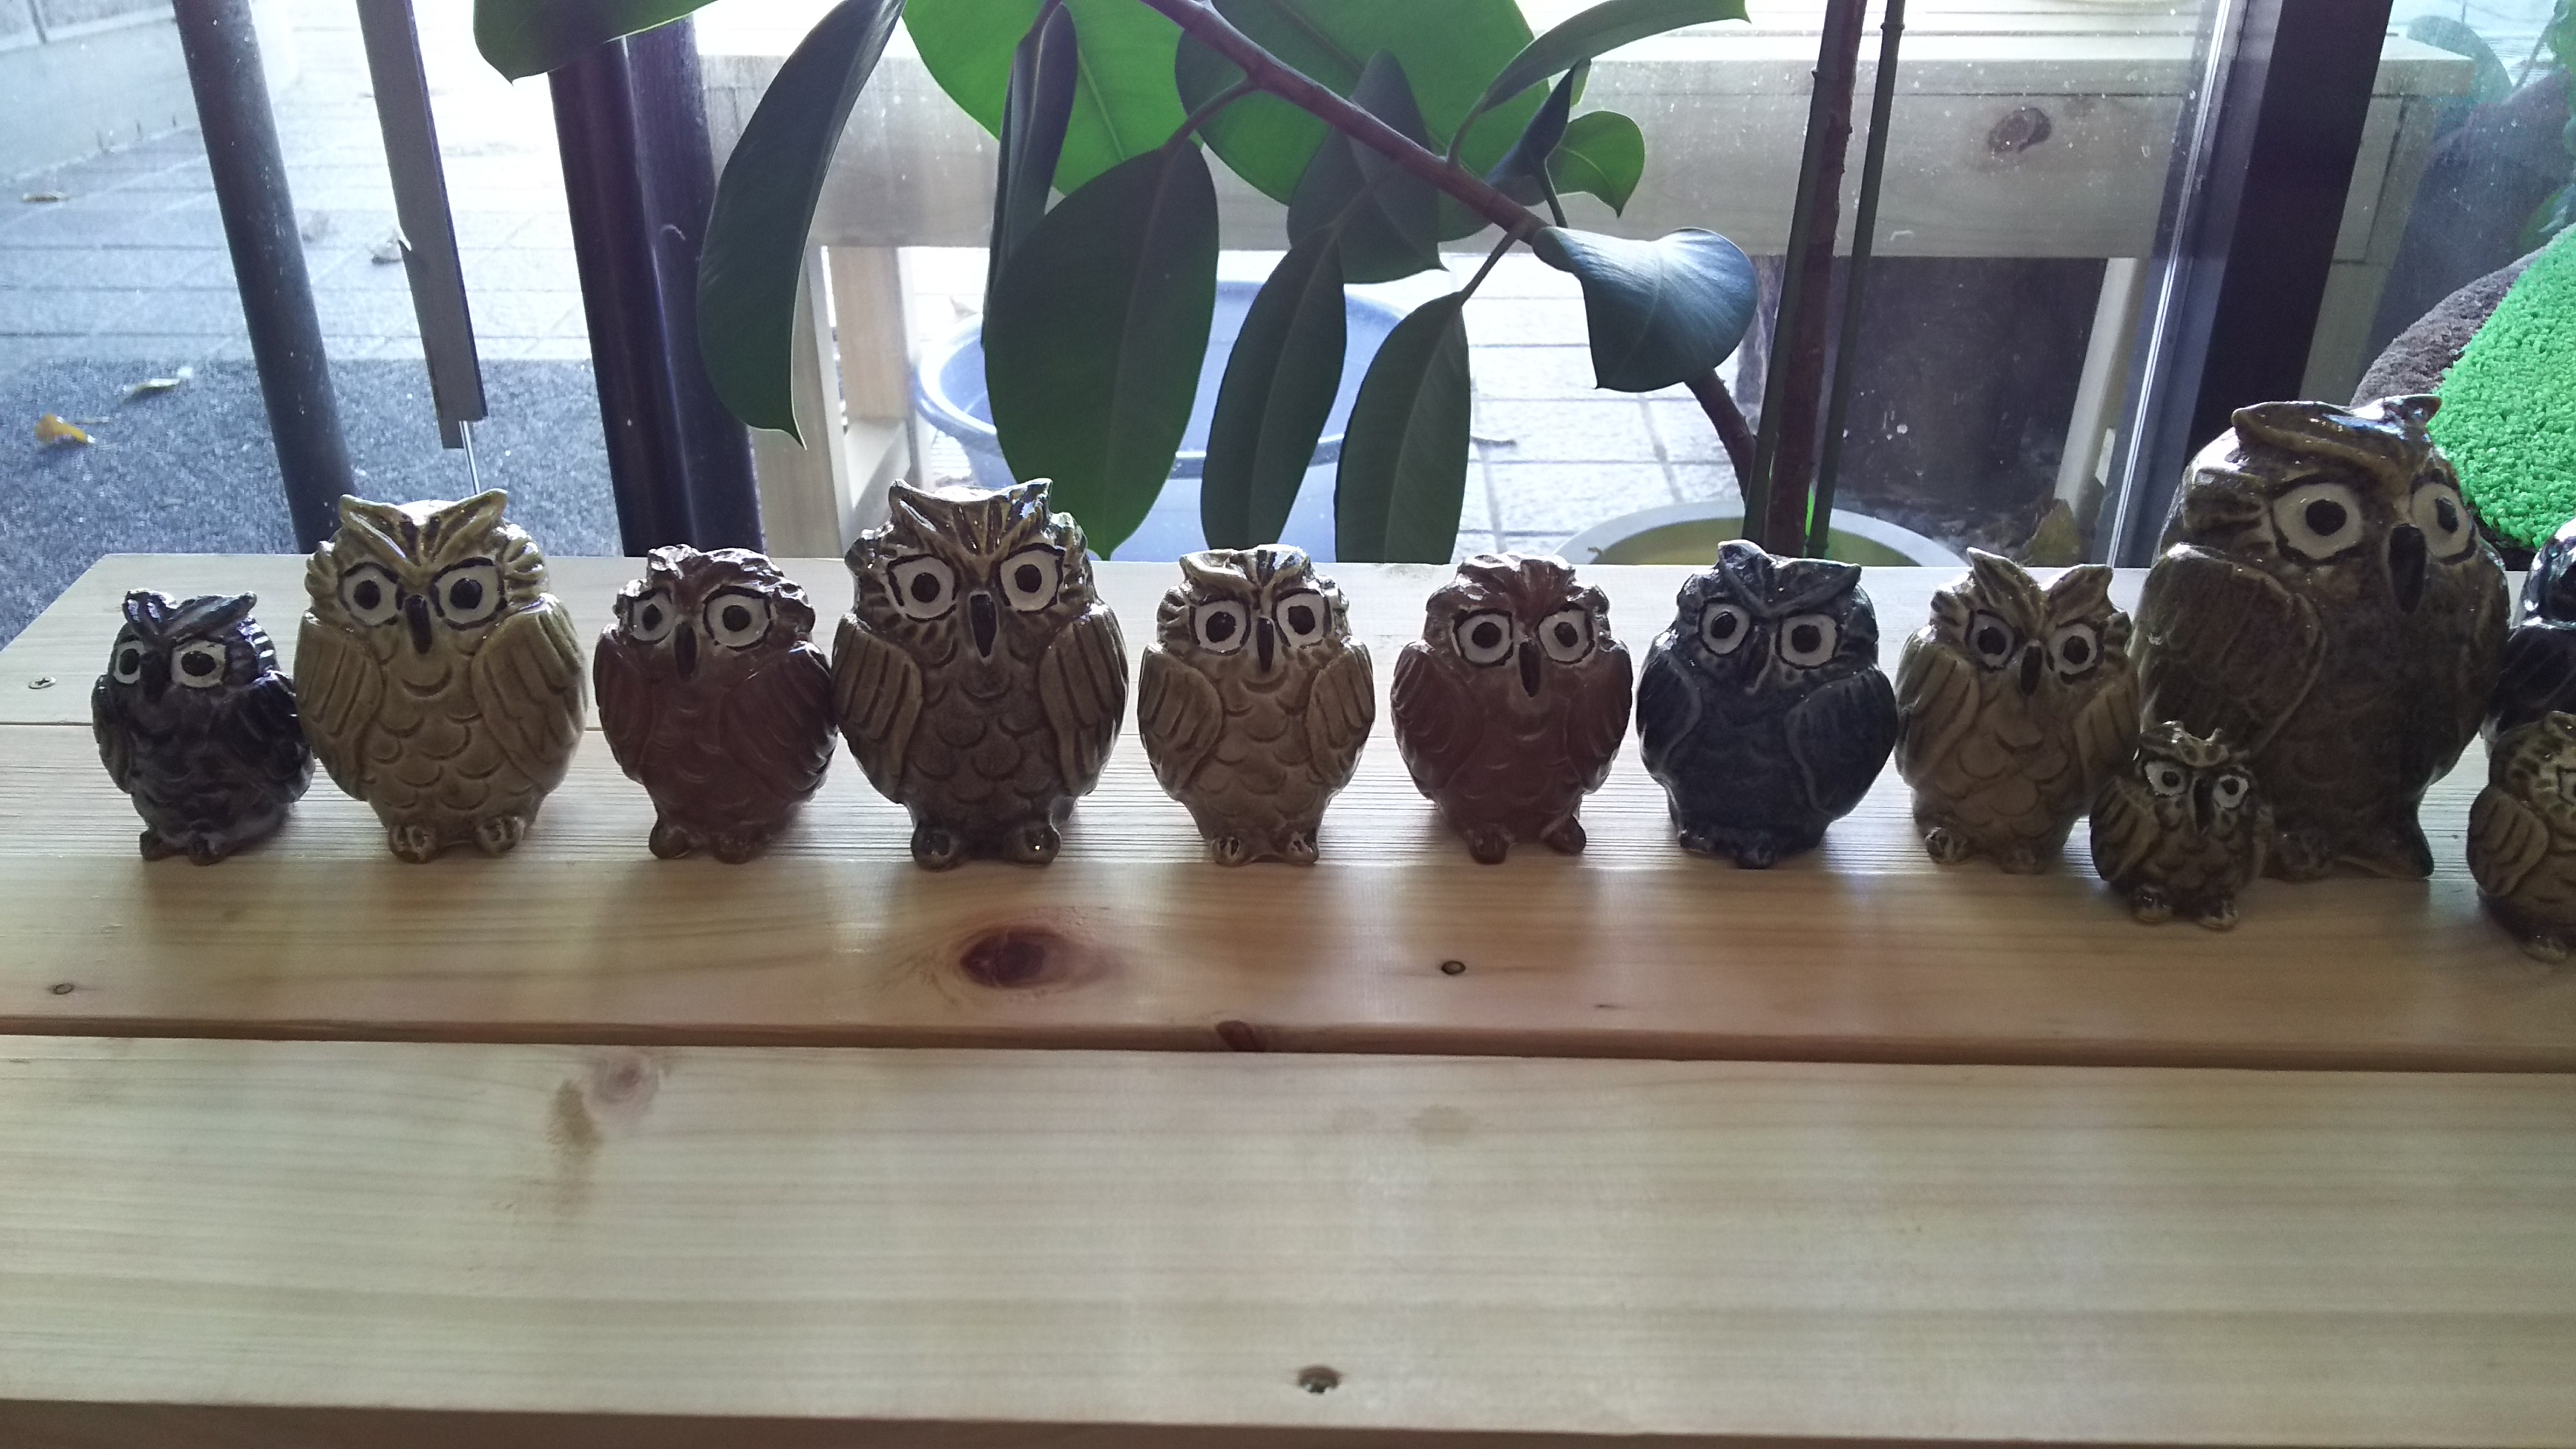 横浜の三渓園等に出展している陶芸家さんのふくろうハンドメイド陶器3